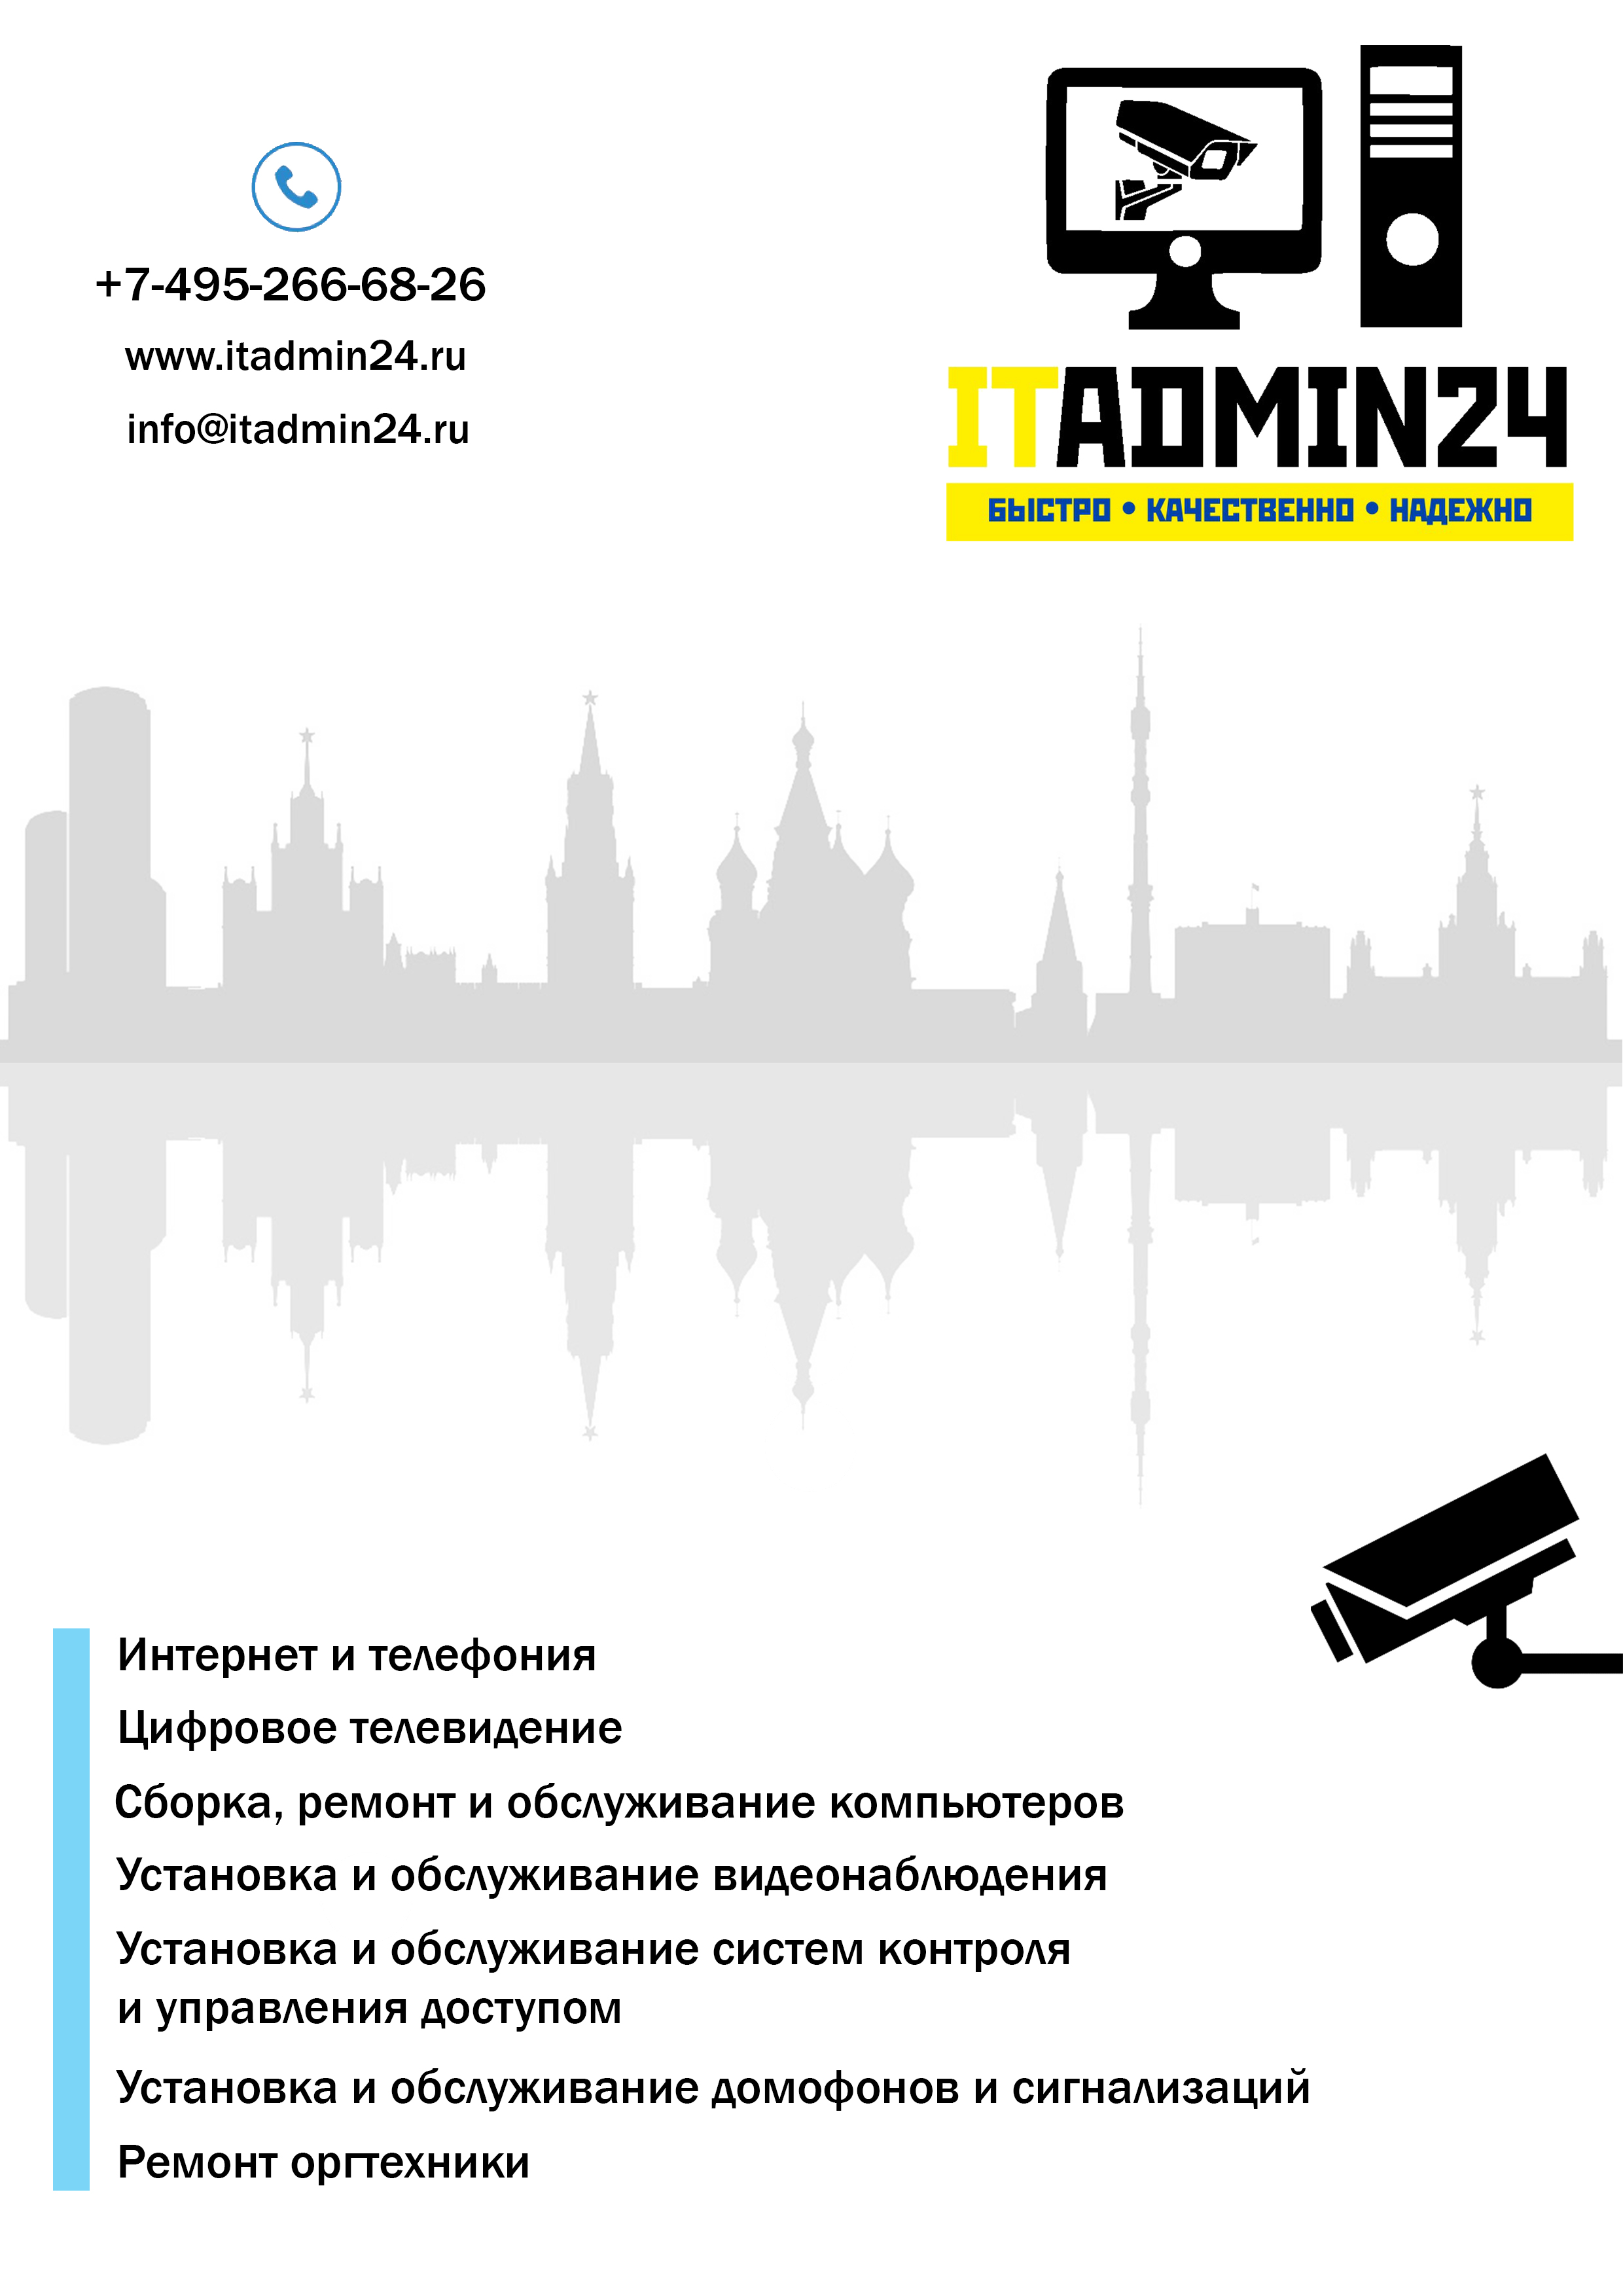 Аутсорсинг компьютеров, монтаж, ремонт и обслуживание видеонаблюдения, сигнализаций - ITadmin24.ru - фотография